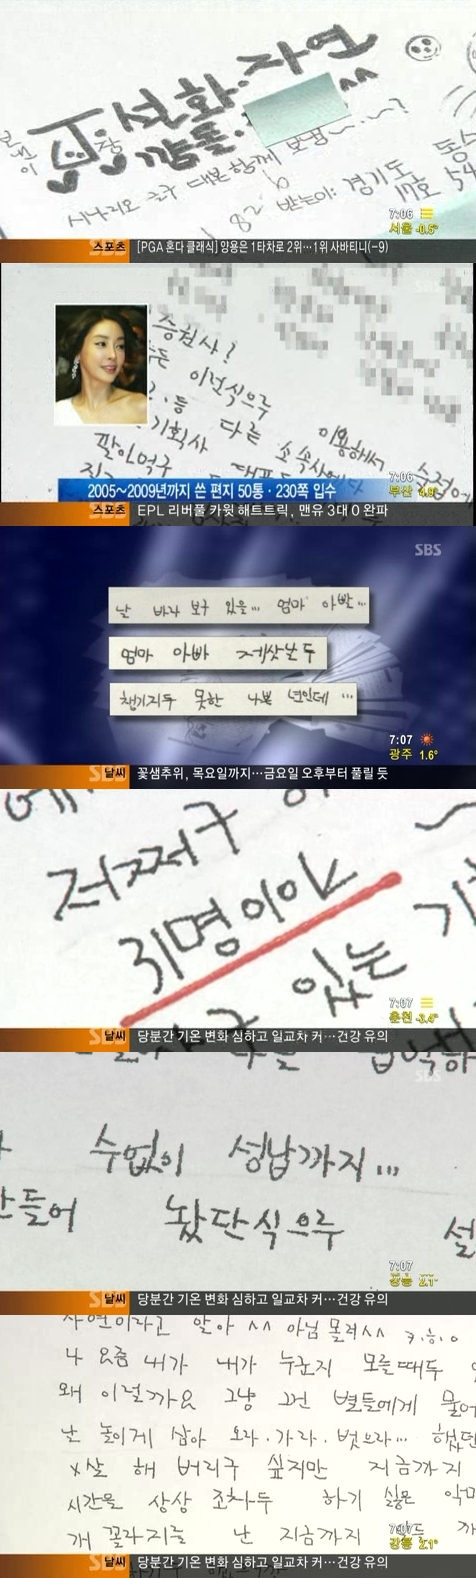 SBS "국과수 감정결과 인정, 보도 경위 밝힐 것"